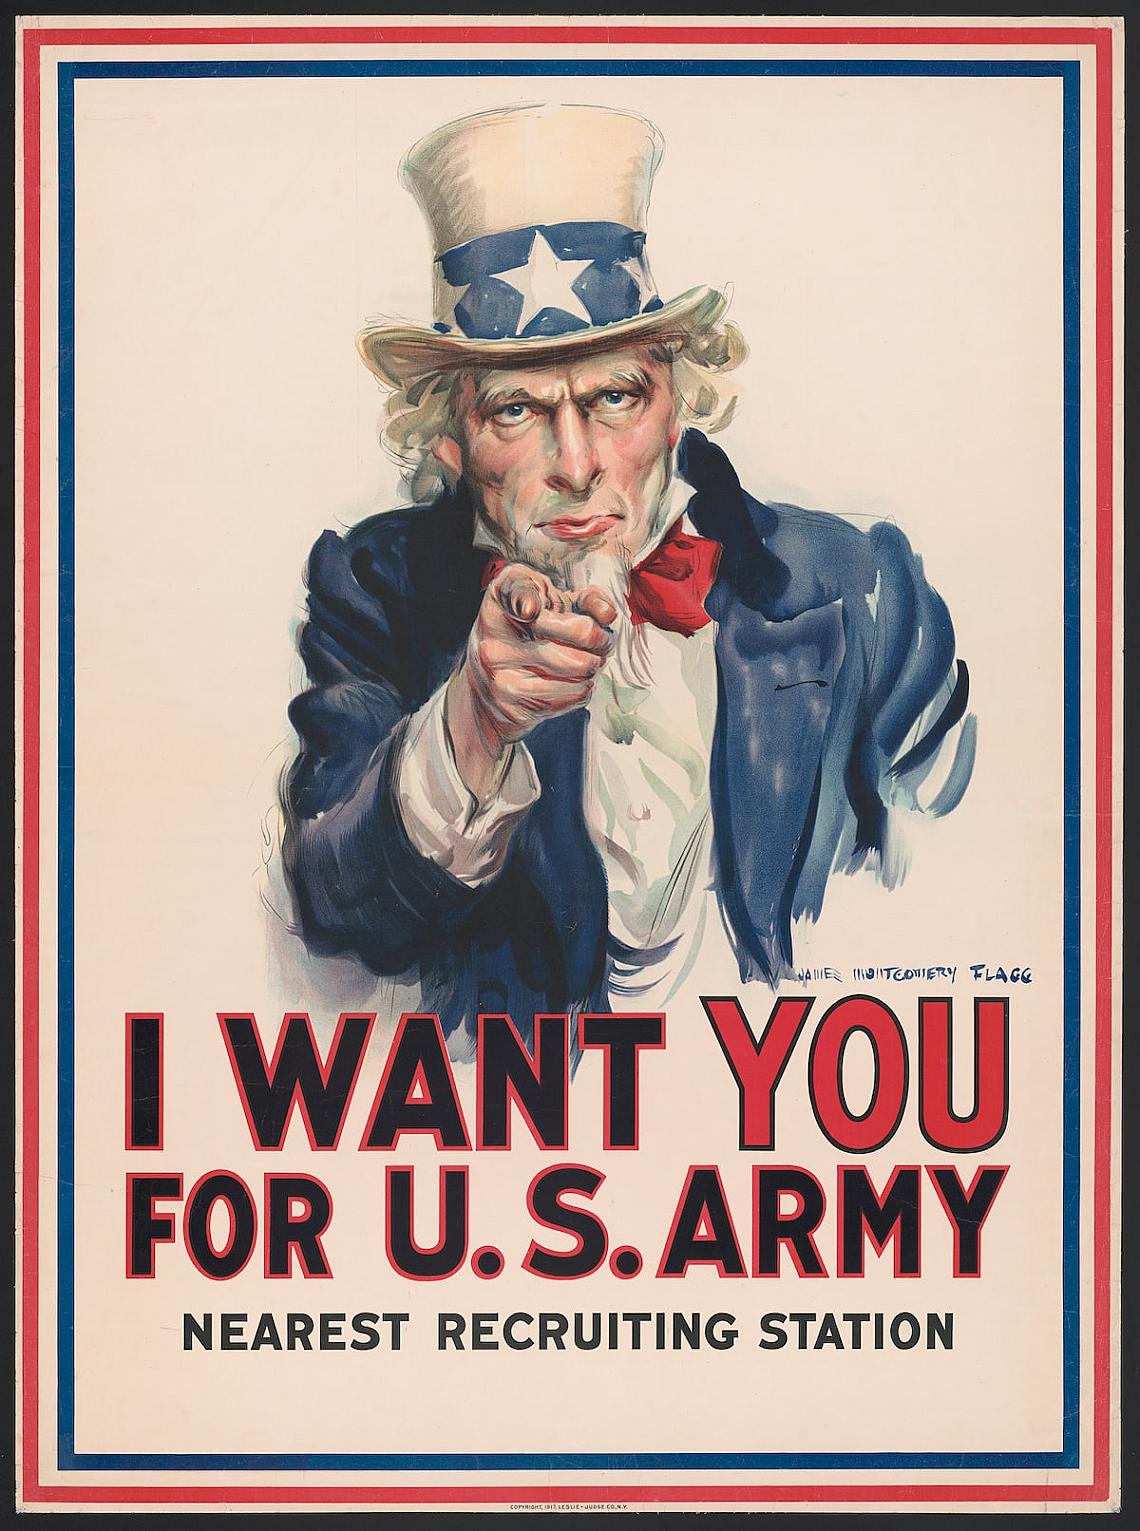 Искам те за армията на САЩ: най-близката станция за набиране на войници. Плакат на Джеймс Монтгомъри Флаг, около 1917 г. От плакатите: Световната война.